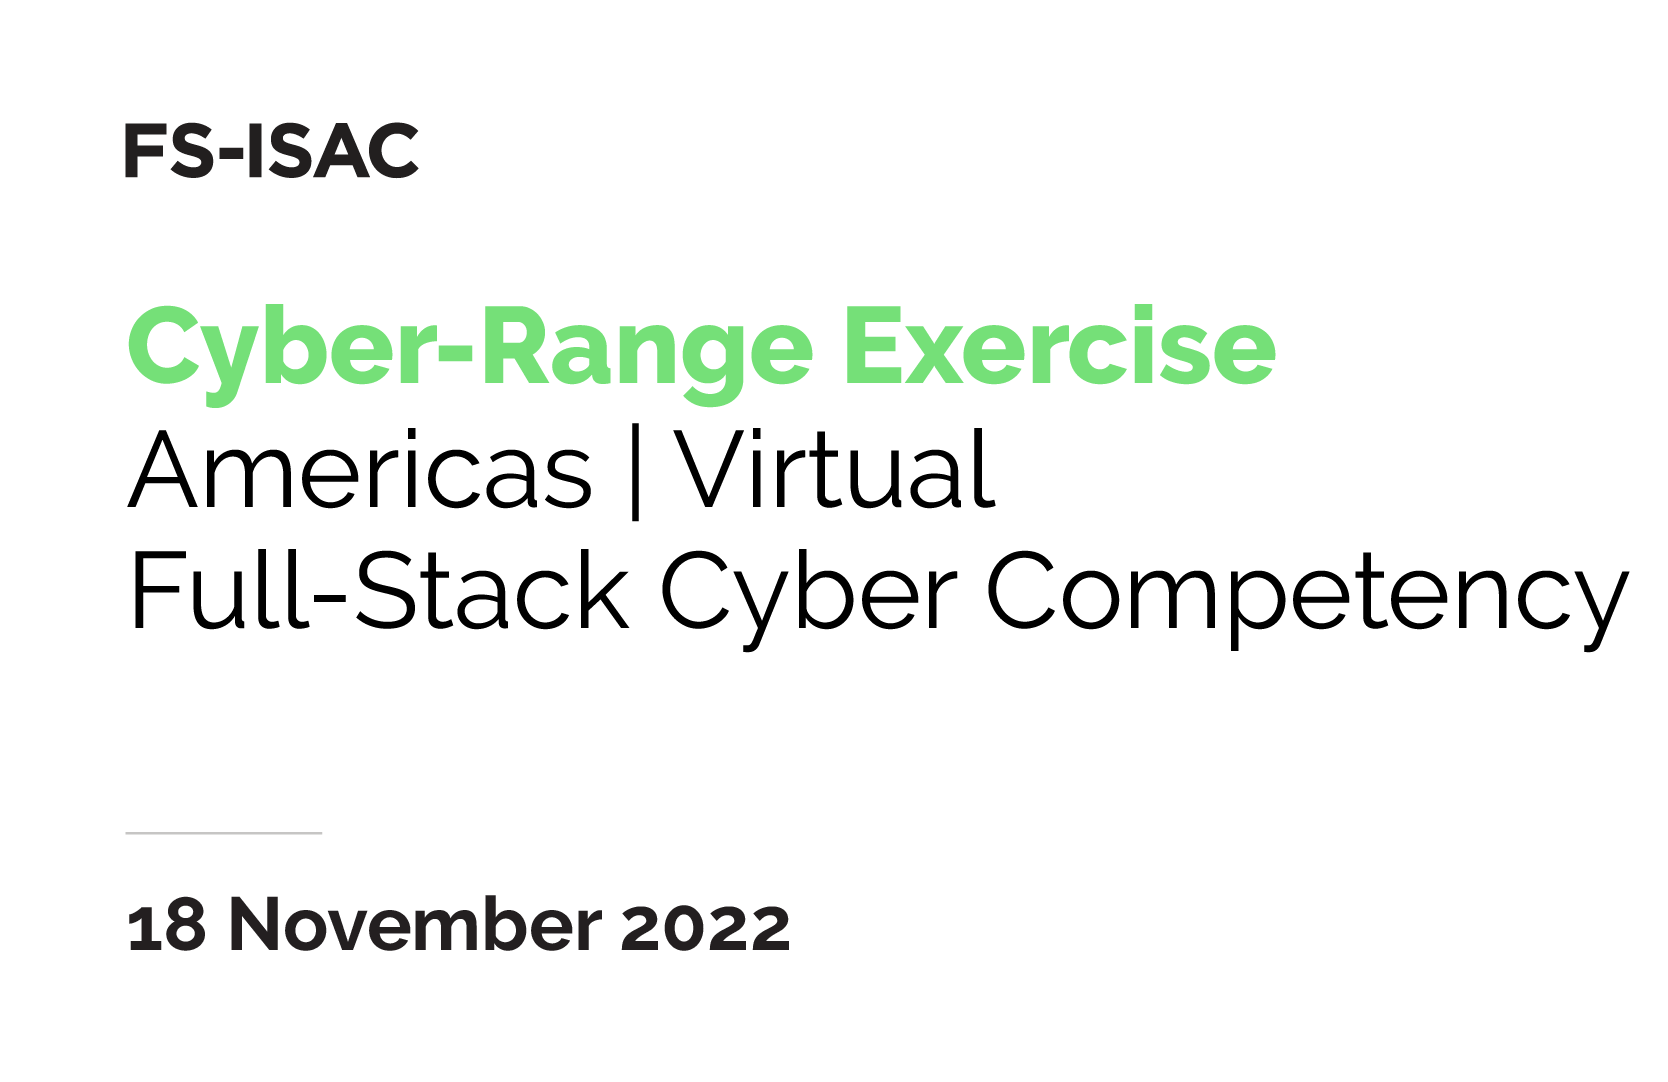 FS-ISAC Cyber Range Exercise | Full-Stack Americas | November 2022